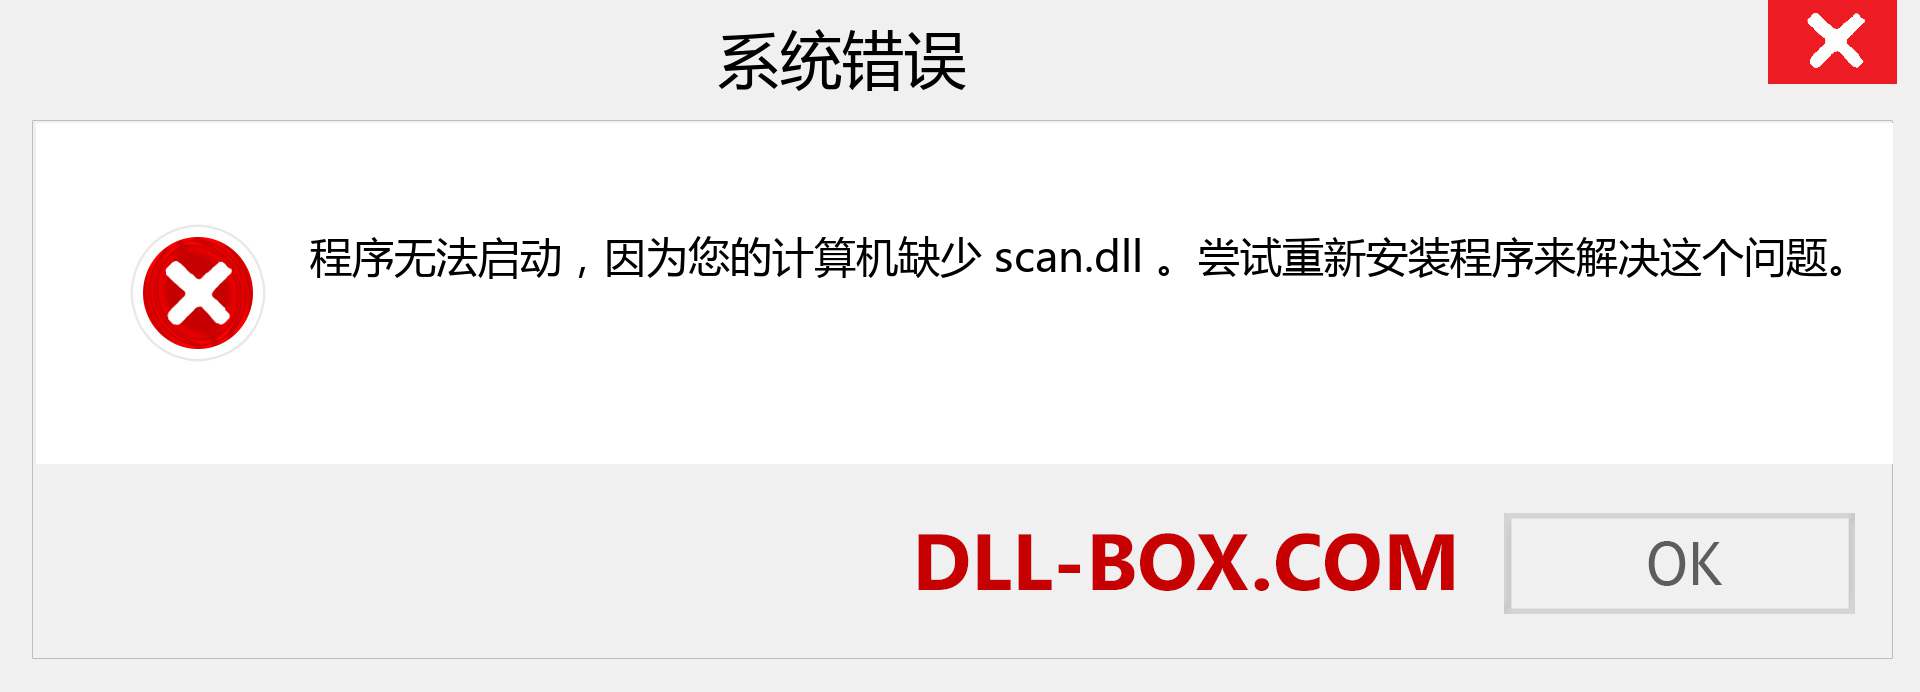 scan.dll 文件丢失？。 适用于 Windows 7、8、10 的下载 - 修复 Windows、照片、图像上的 scan dll 丢失错误